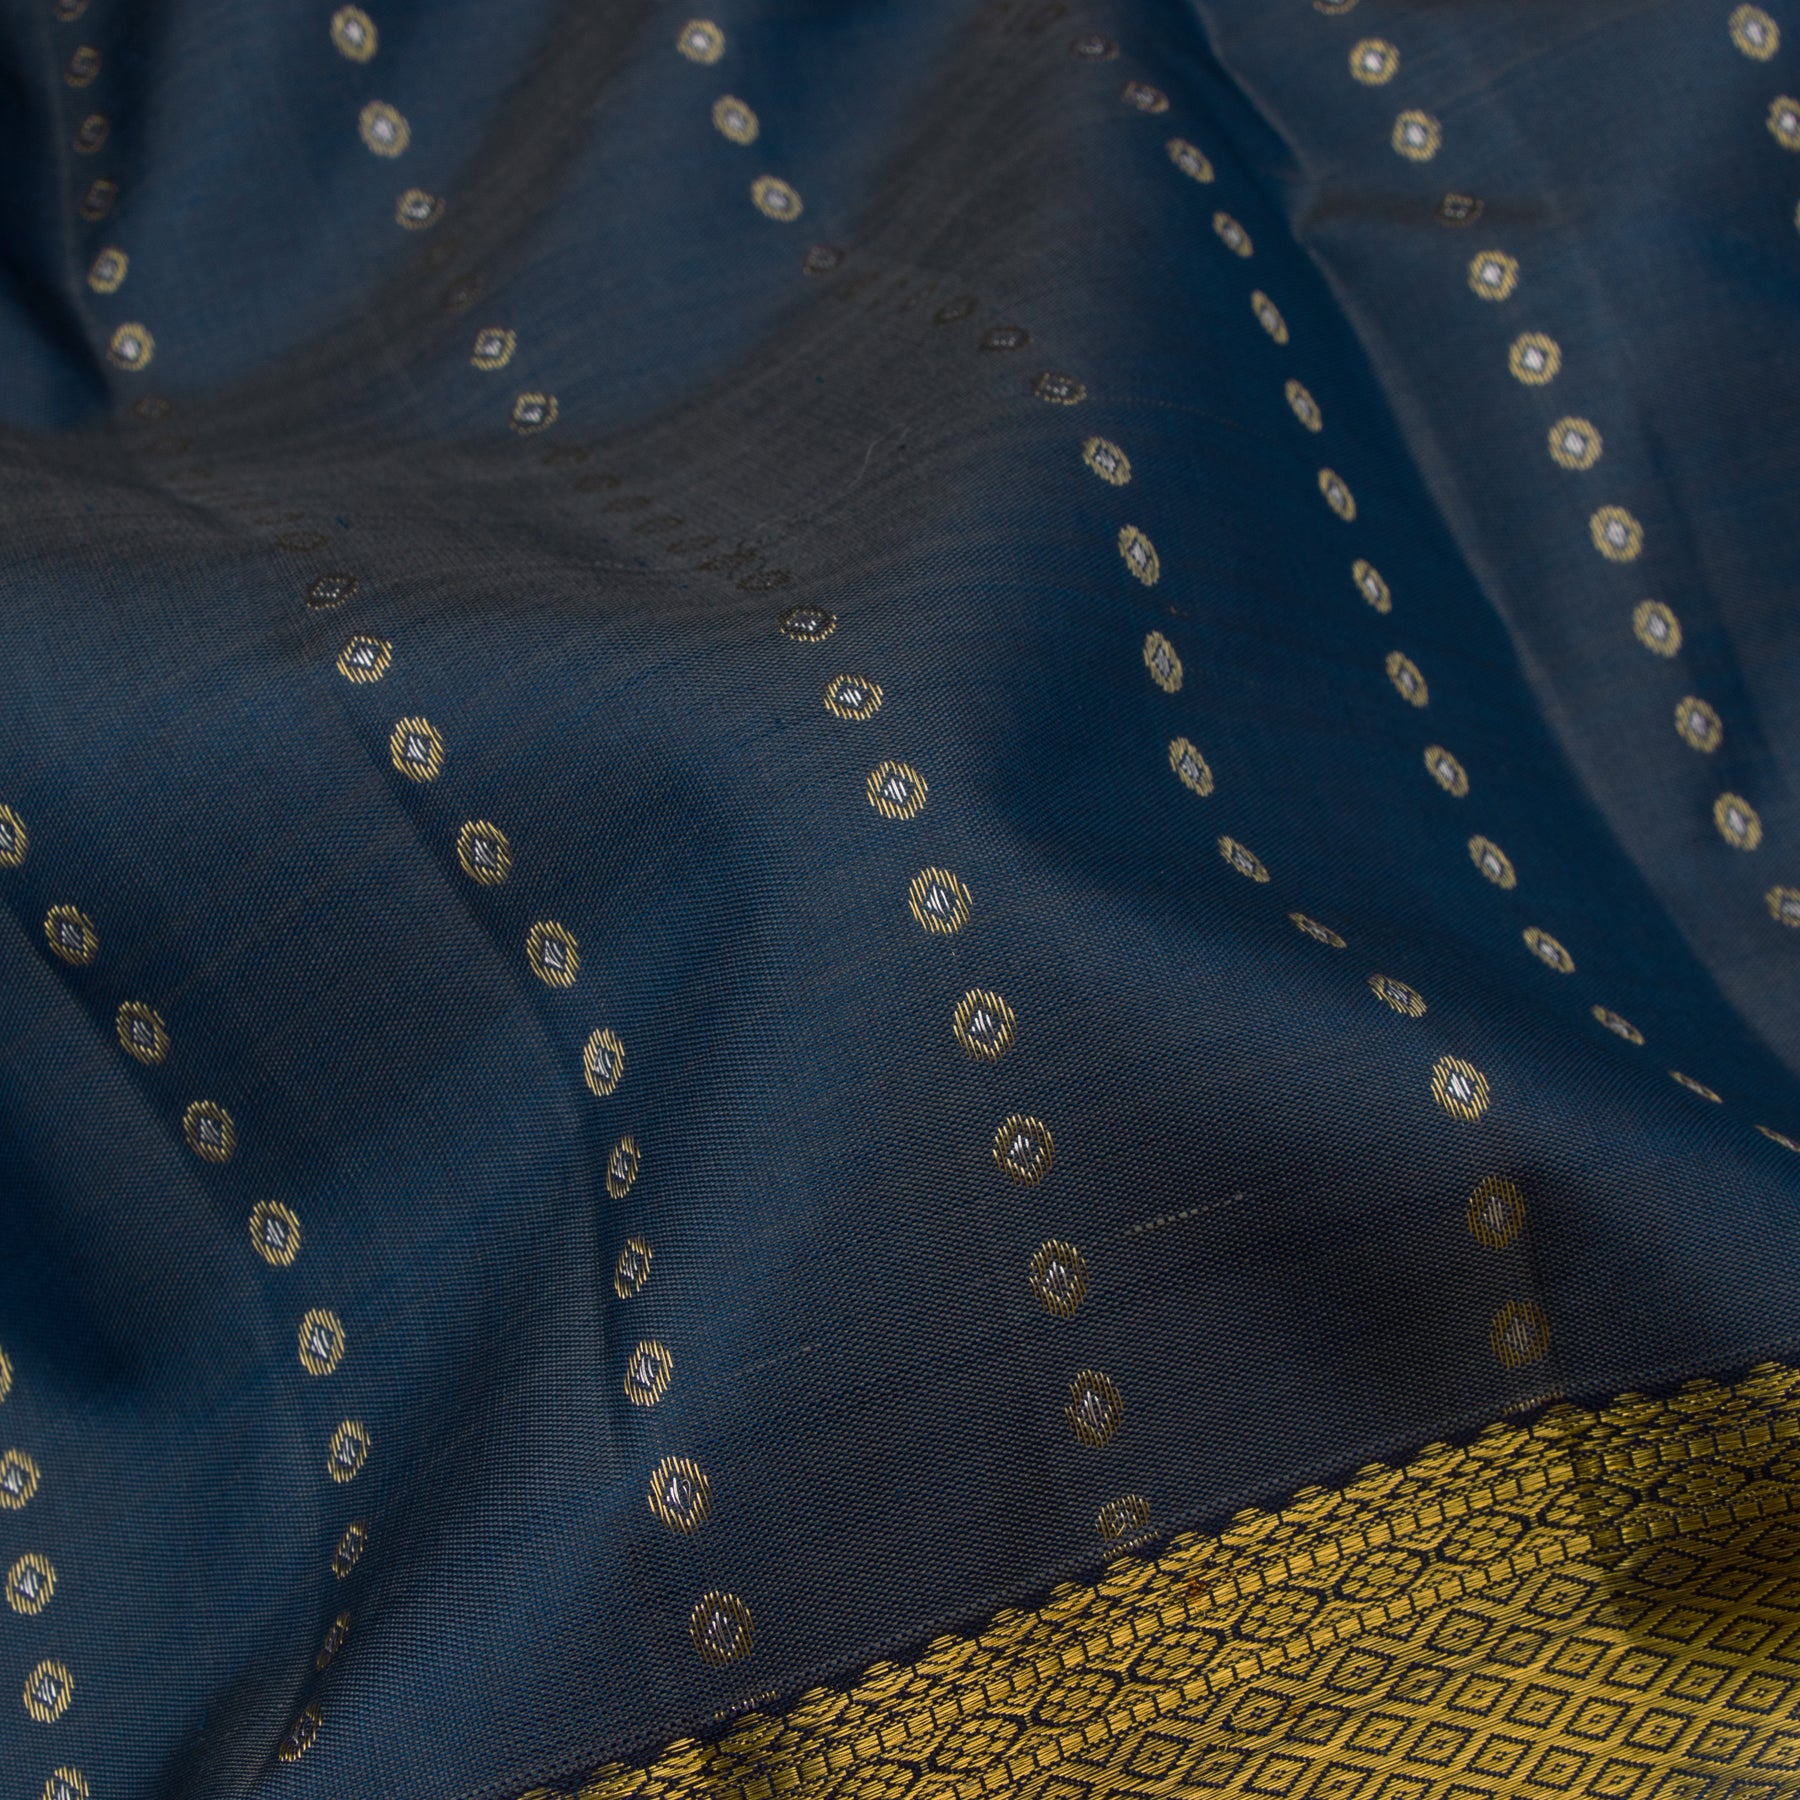 Kanakavalli Kanjivaram Silk Sari 23-611-HS001-03271 - Fabric View